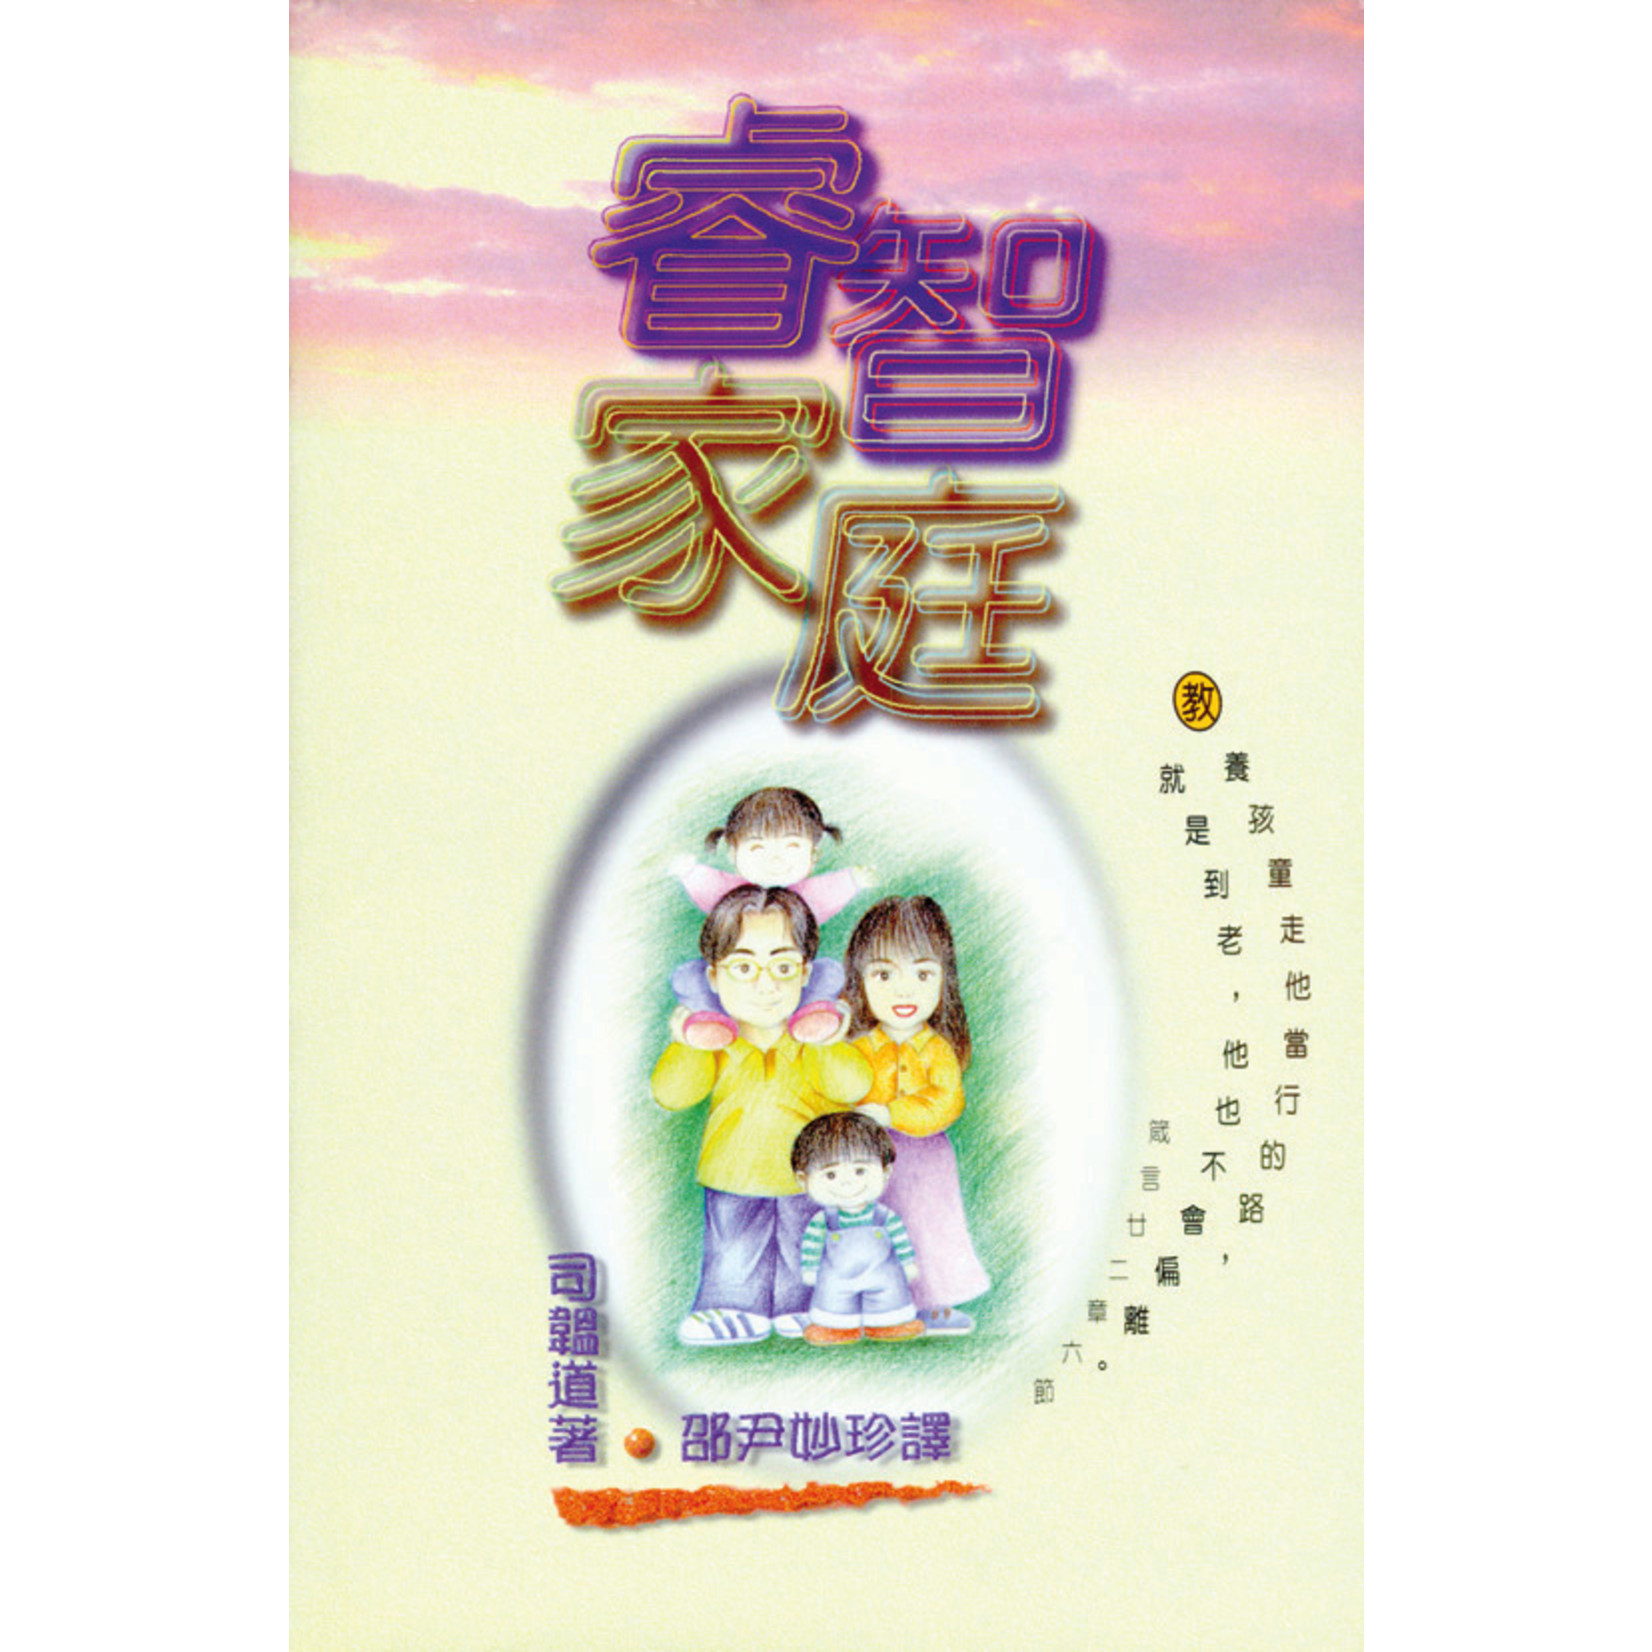 天道書樓 Tien Dao Publishing House 睿智家庭 Growing Wise in Family Life